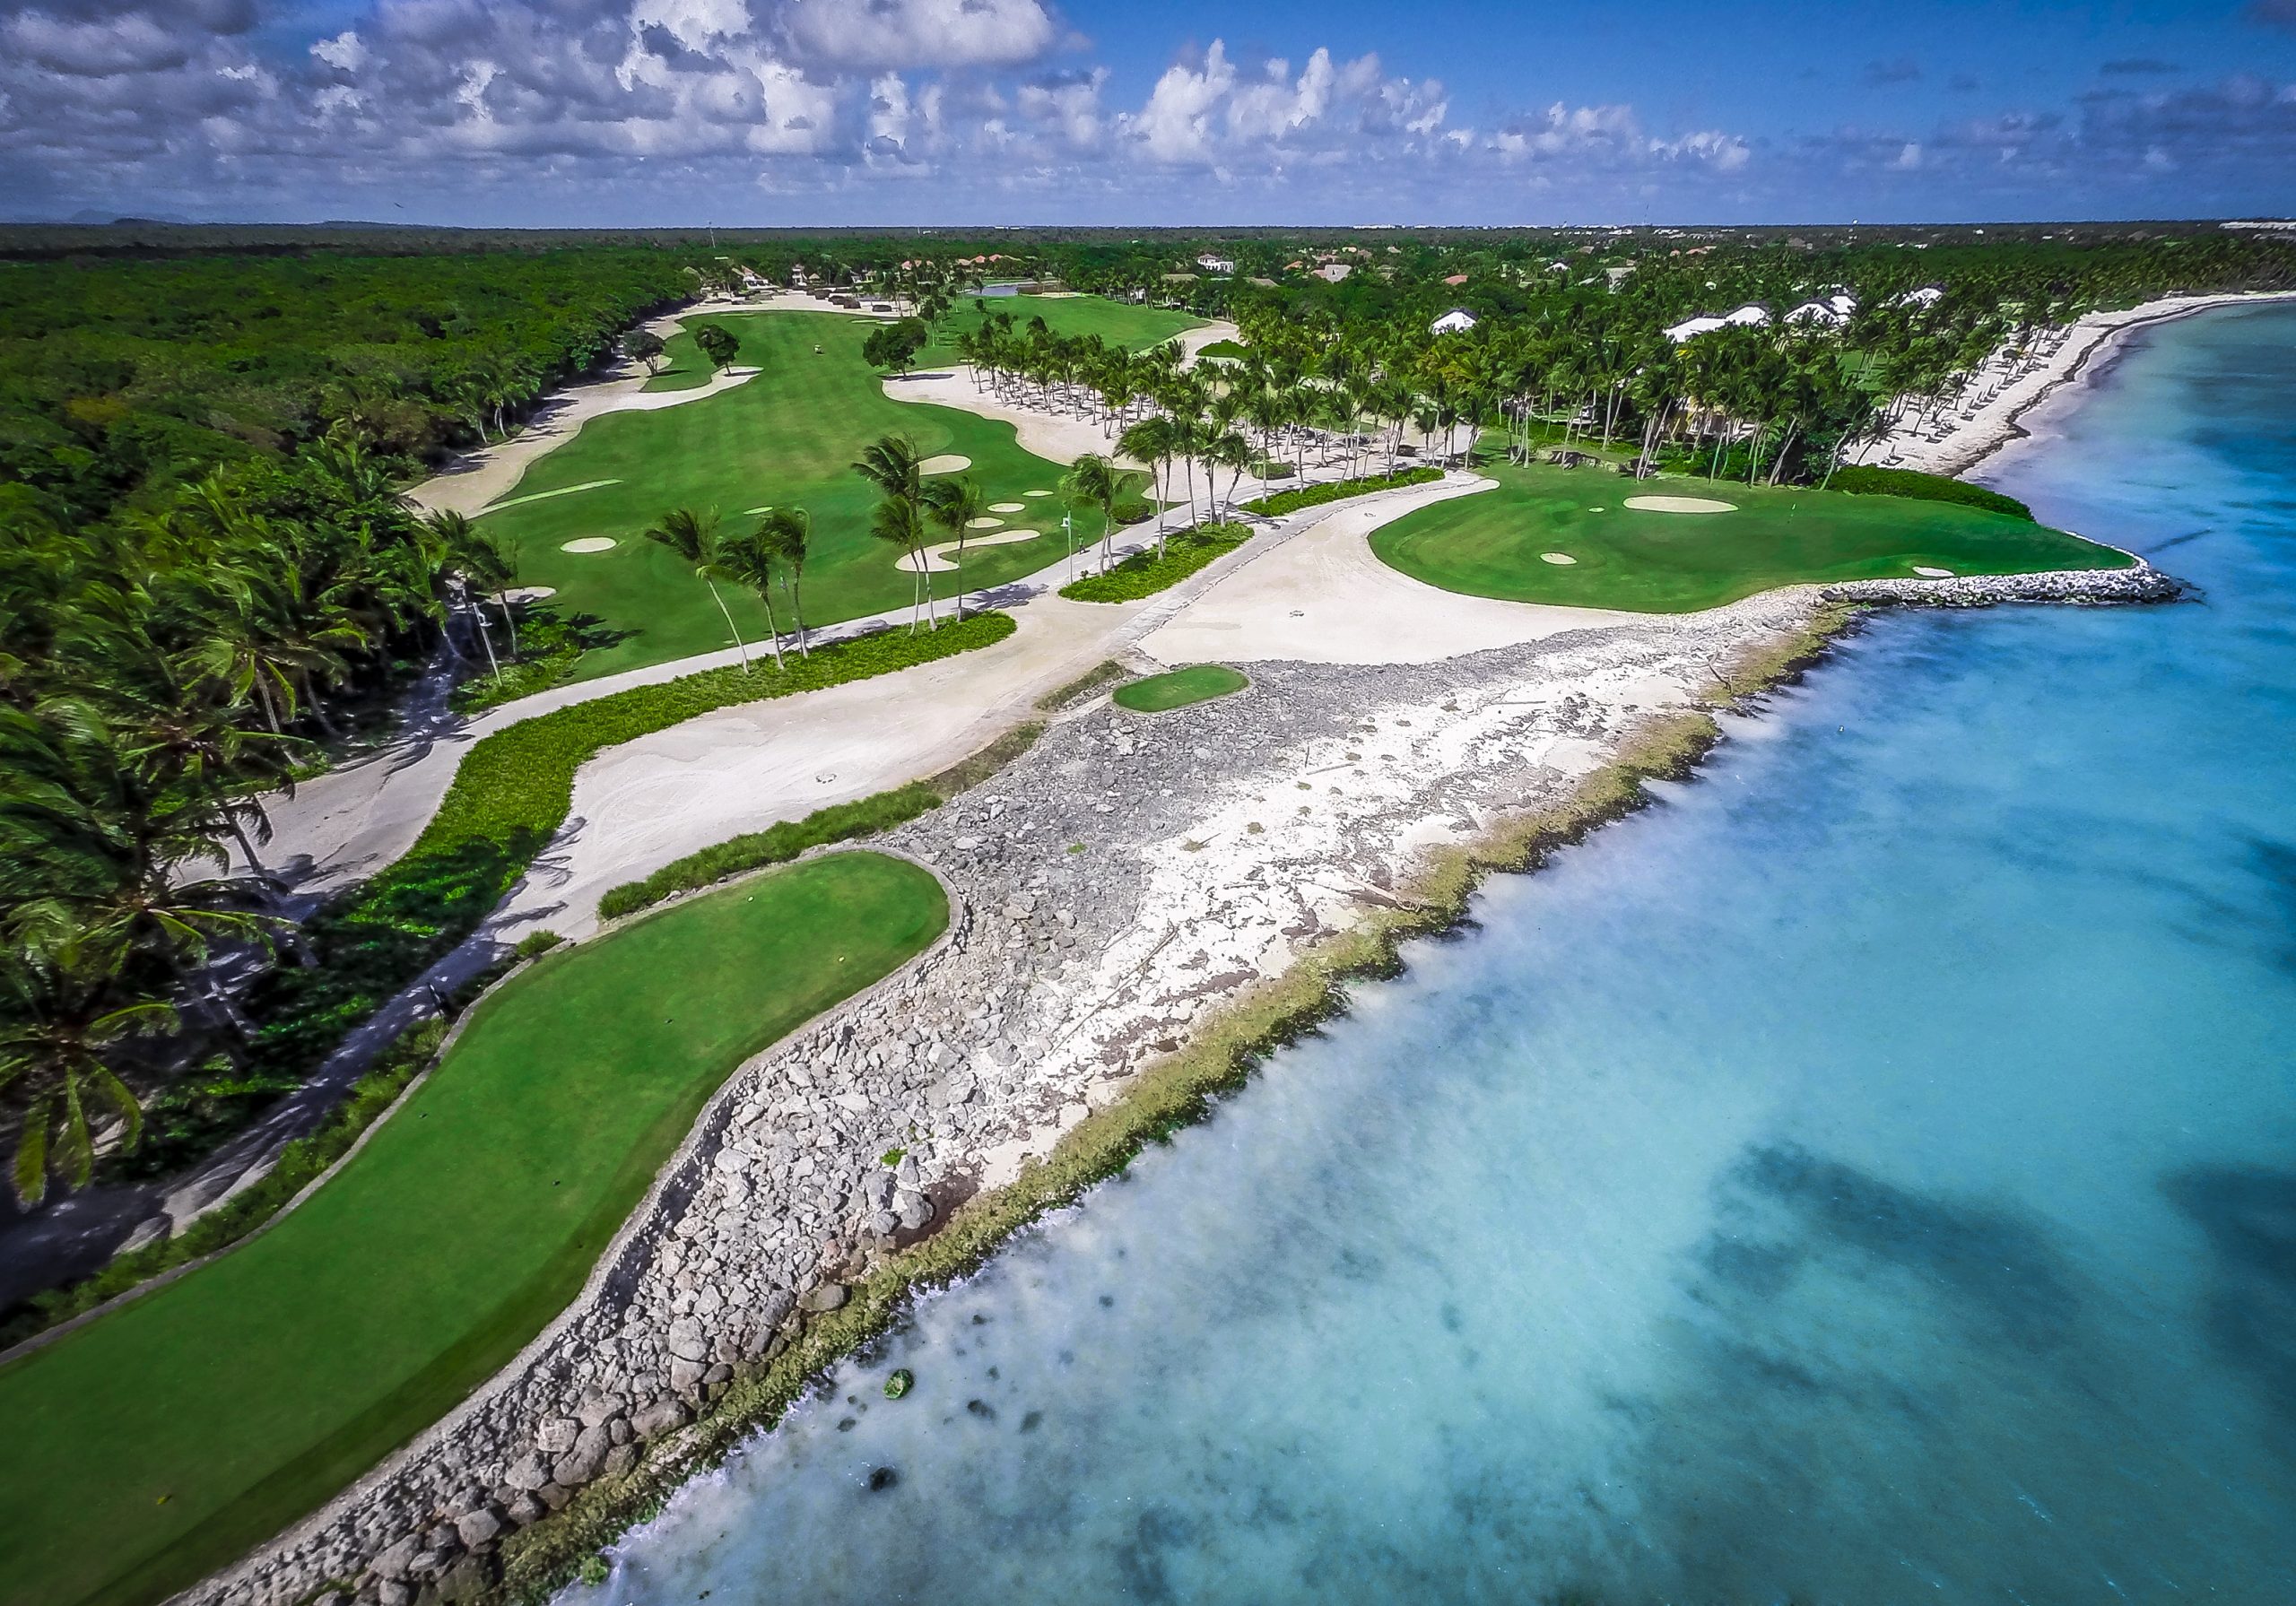 La Cana Golf Club in the Dominican Republic